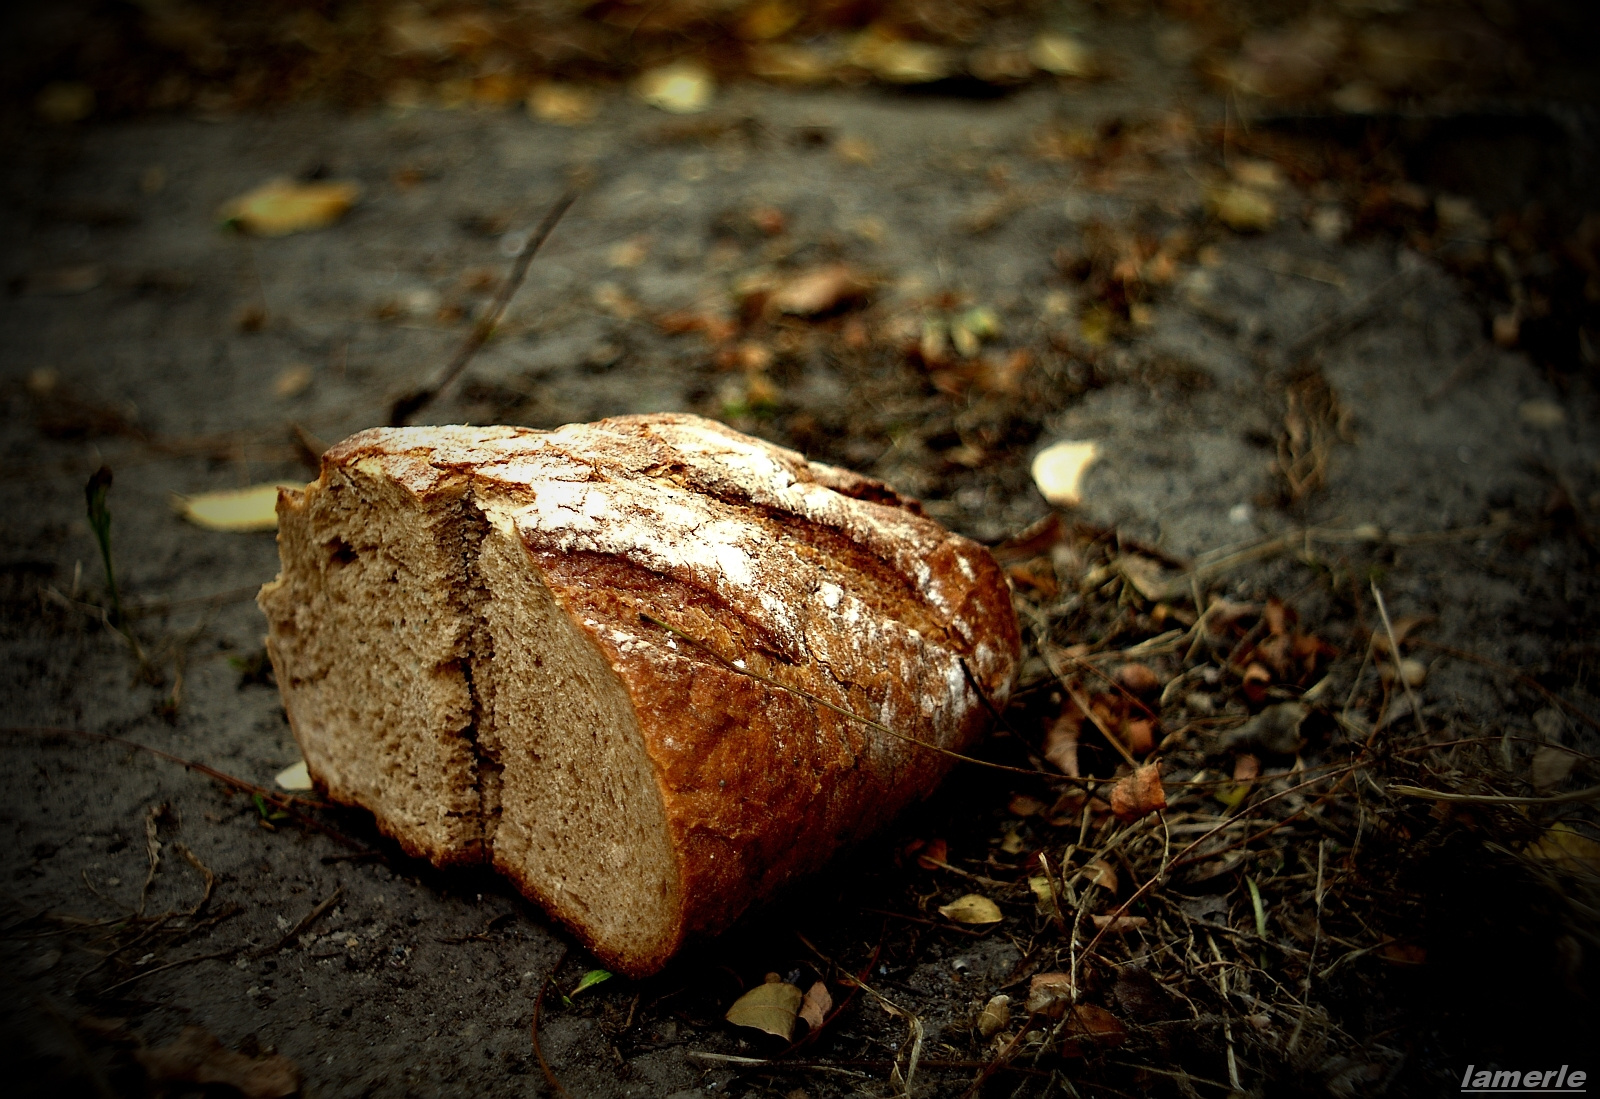 mindennapi kenyerünk